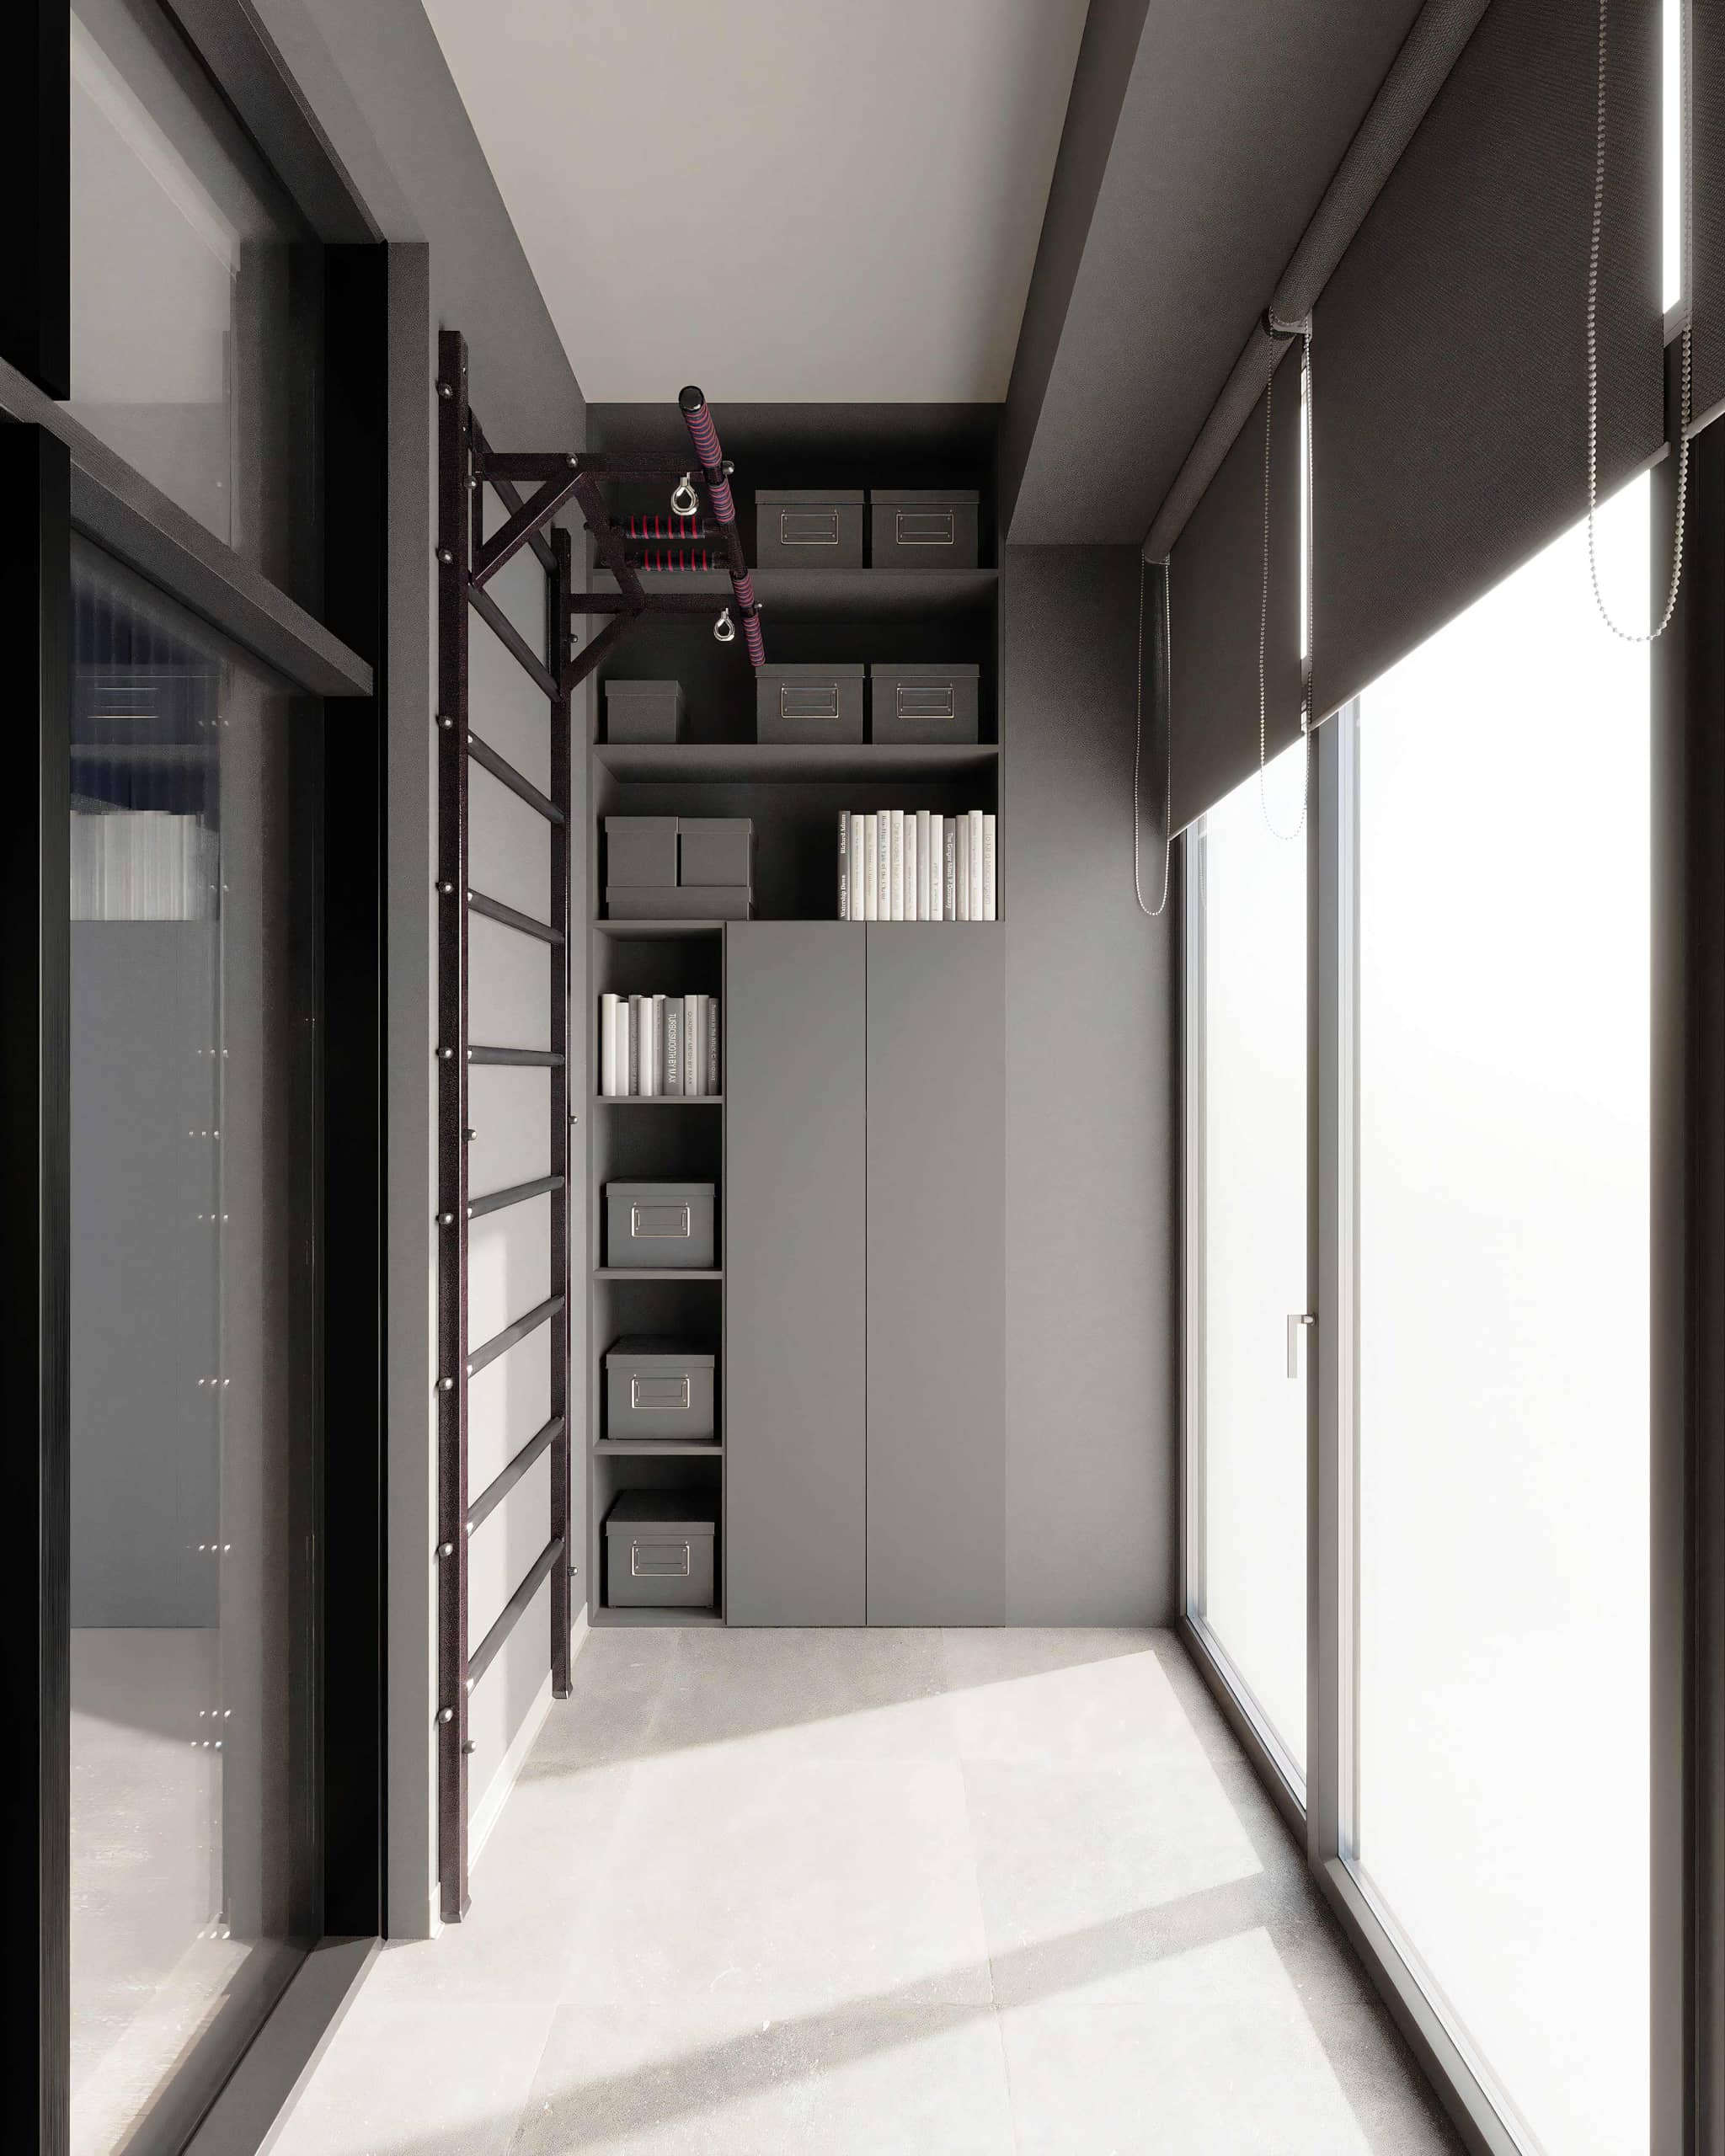 Оформление интерьера четырехкомнатной квартиры, пятикомнатной квартиры, двухуровневой квартиры в стиле минимализм. Фото № 68936.